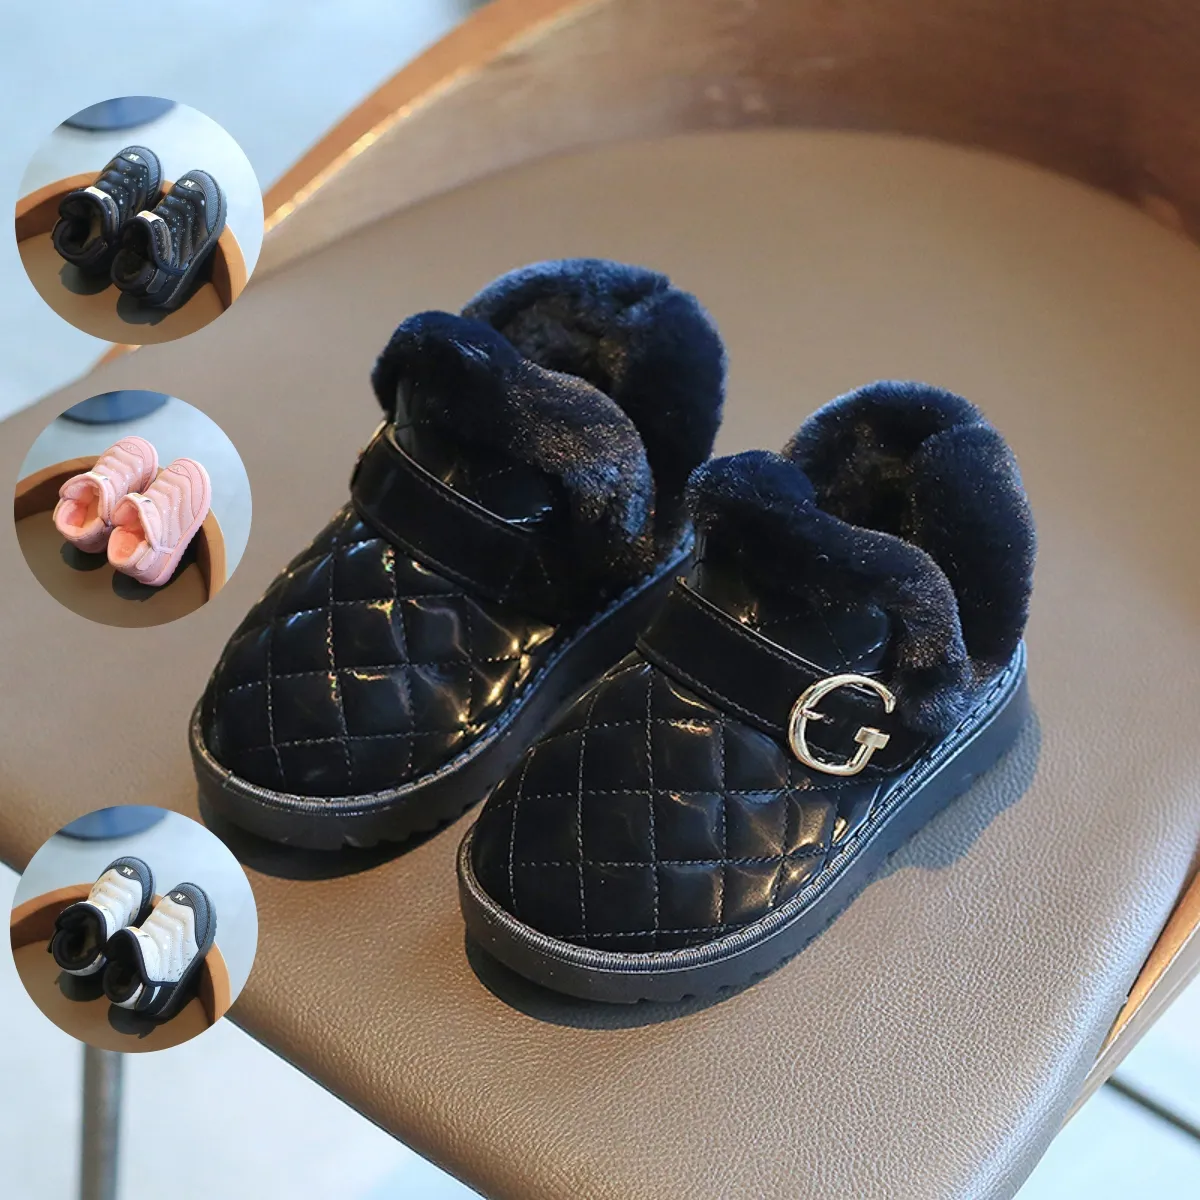 Stivali da neve termica invernali alla moda nuovi stivali casual di alta qualità per bambine e bambini piccoli